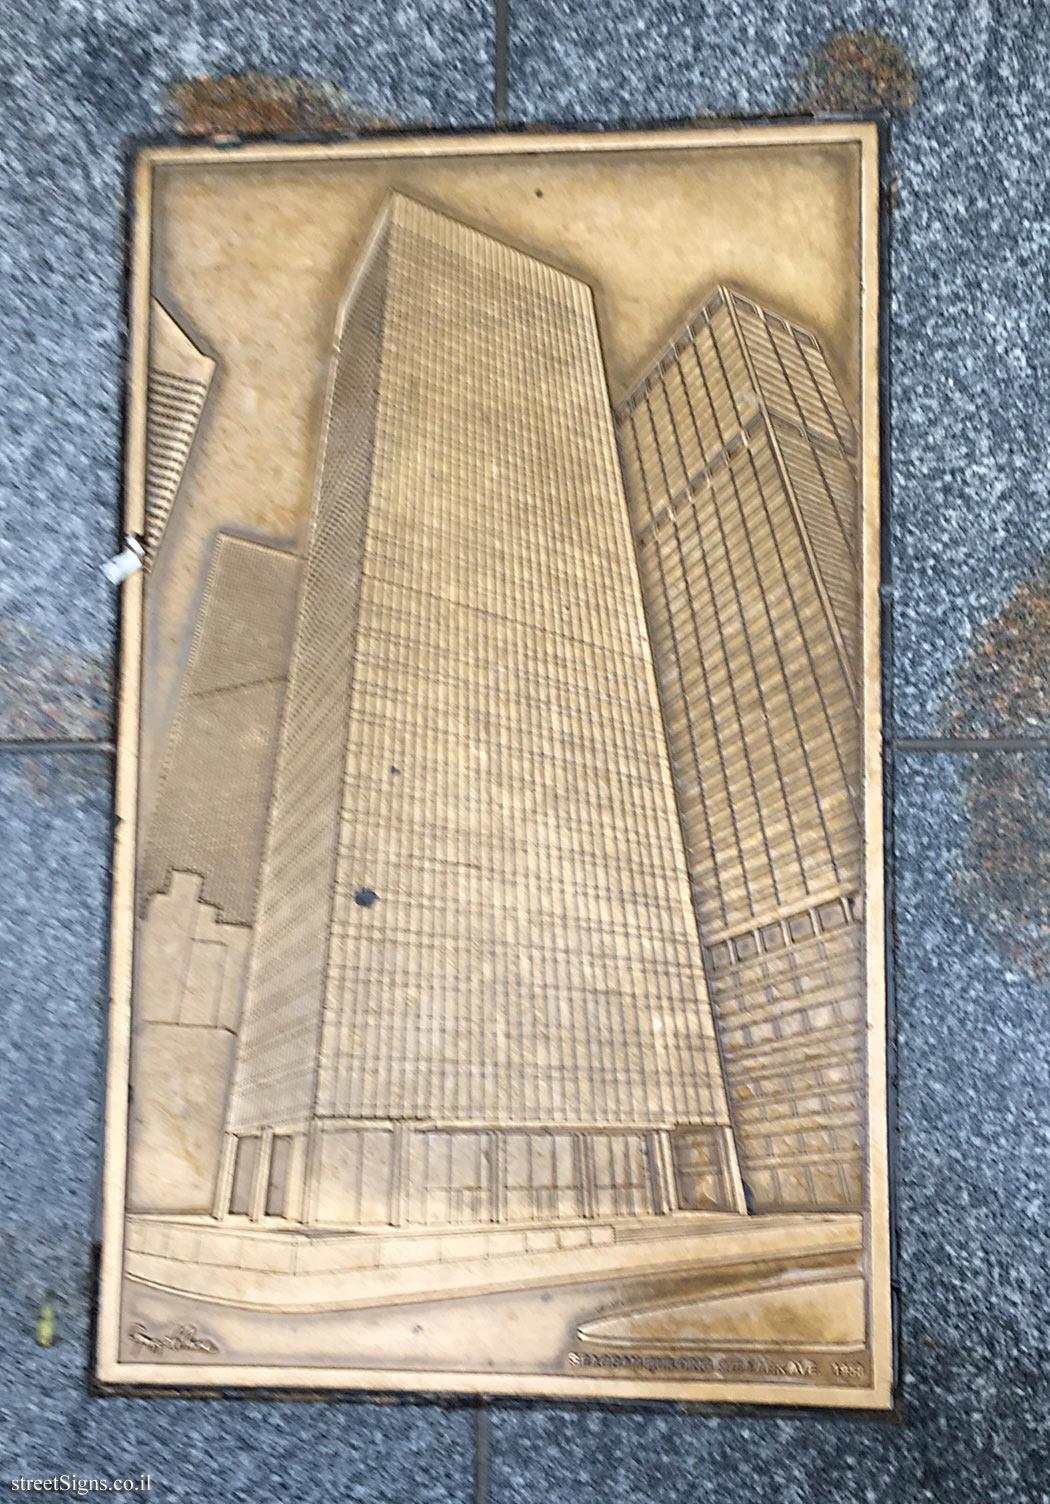 New York - Park Avenue plaques - Seagram Building